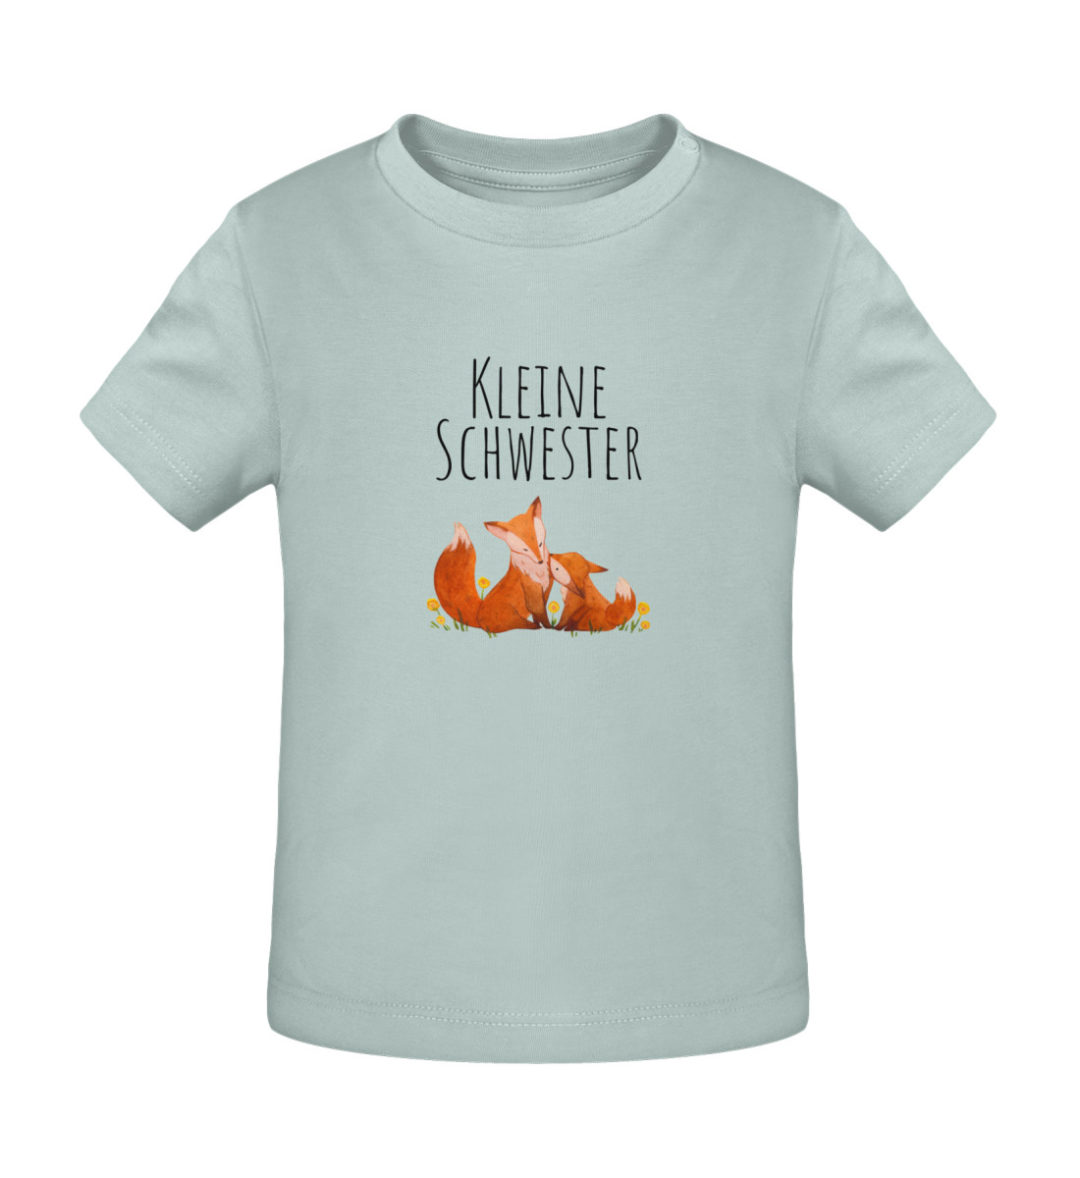 Kleine Schwester - Baby Creator T-Shirt ST/ST-7033